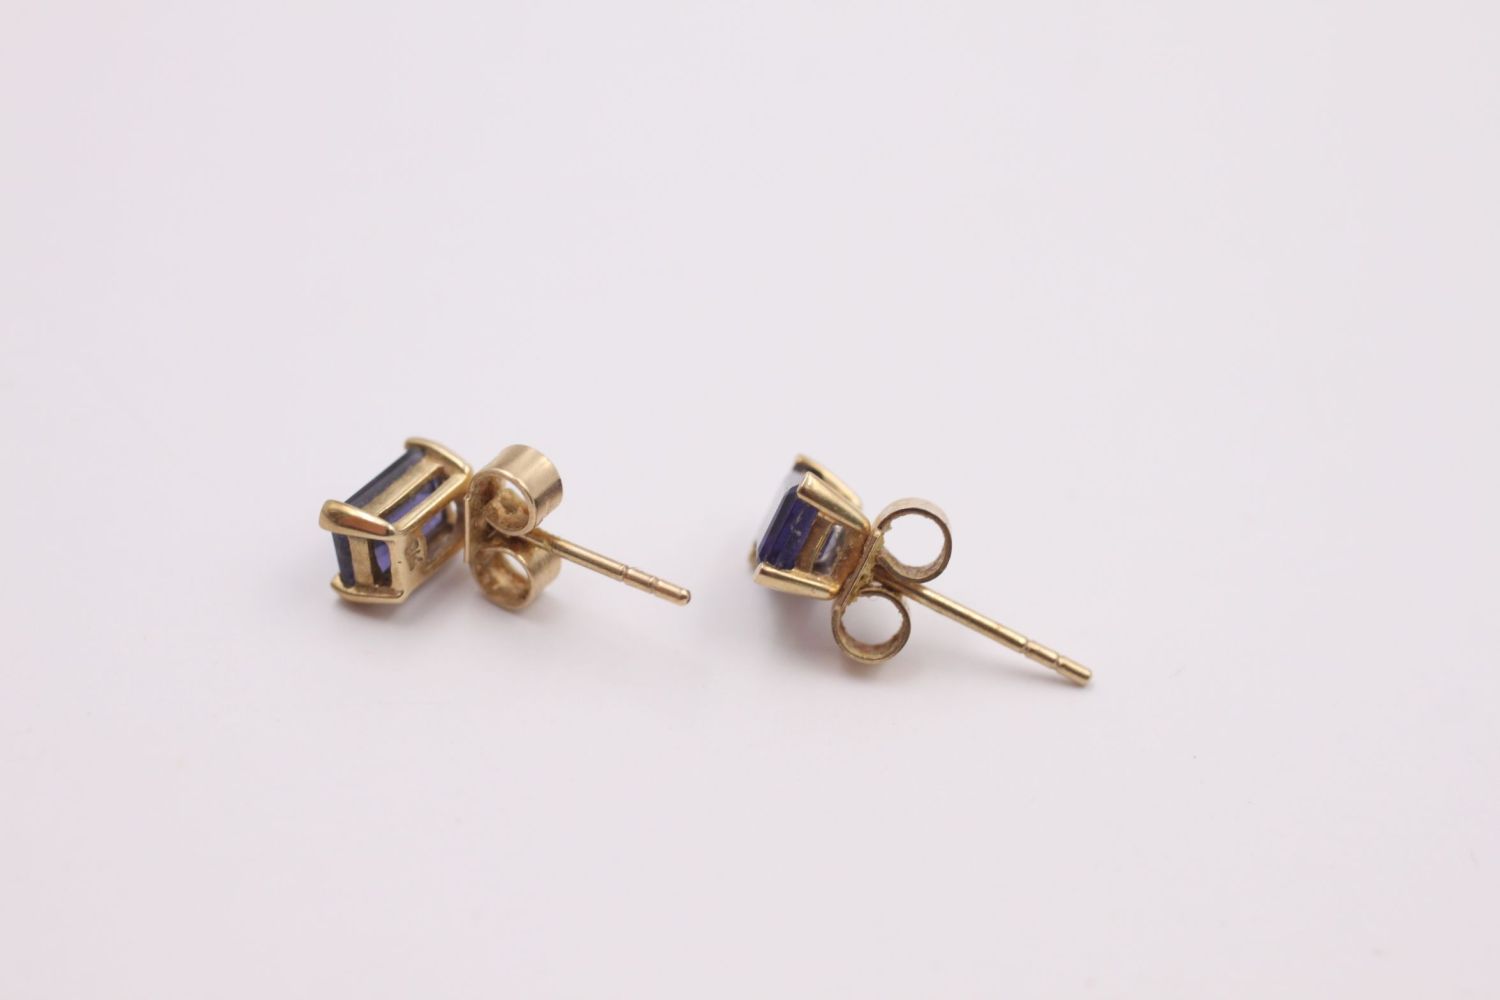 9ct gold iolite stud earrings 0.9 grams gross - Image 4 of 4